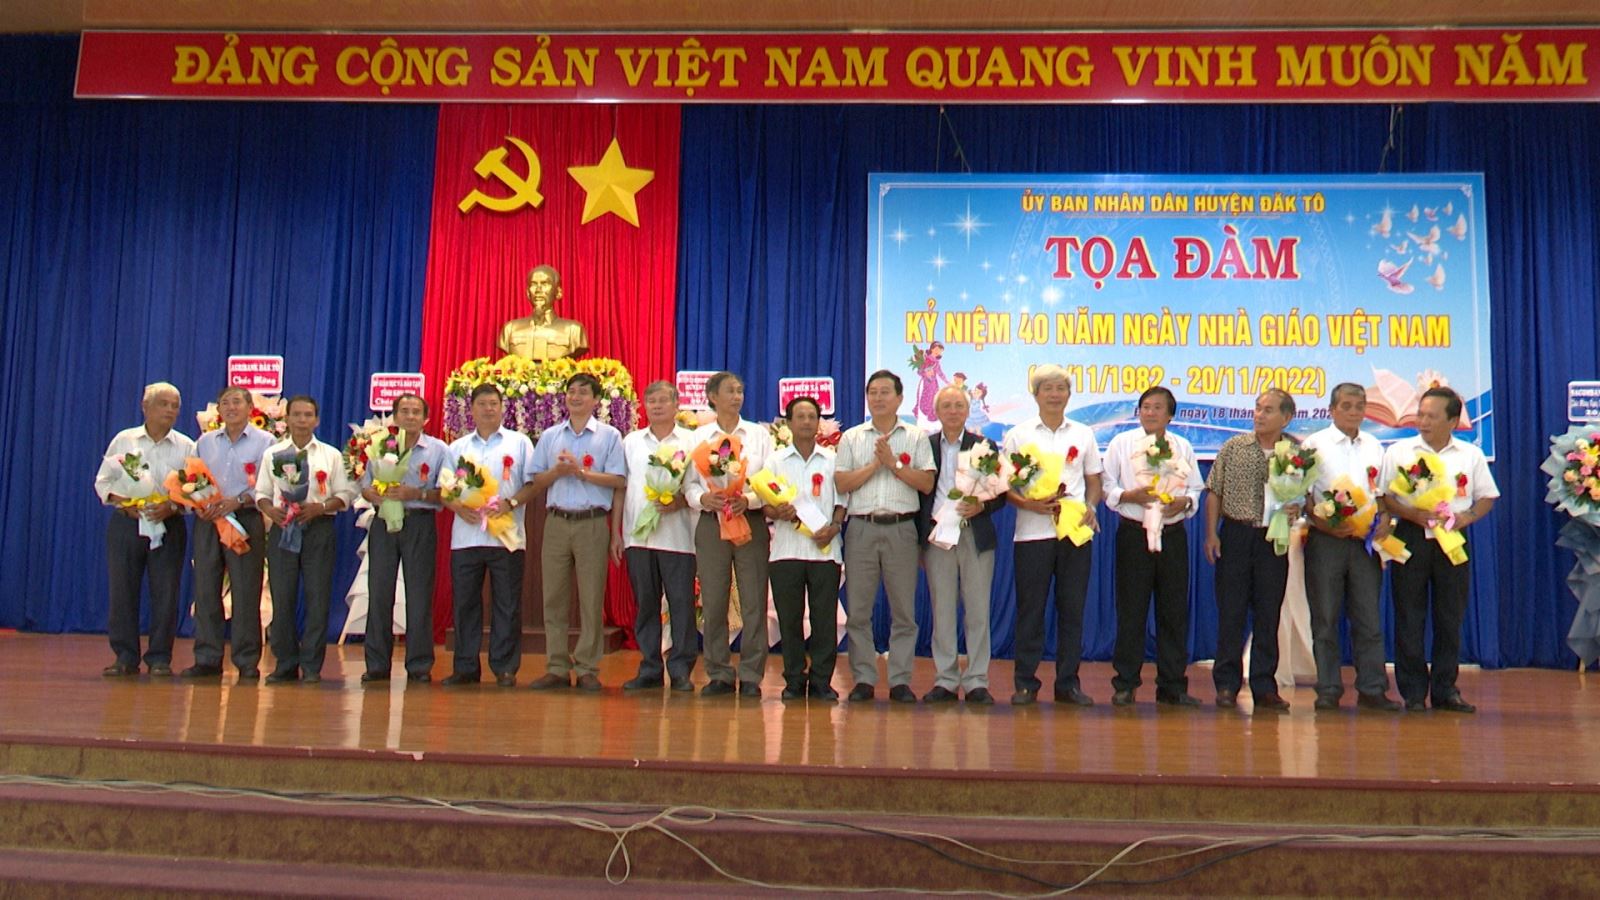 Lễ kỷ niệm 40 năm ngày Nhà giáo Việt Nam (20/11/1982-20/11/2022)